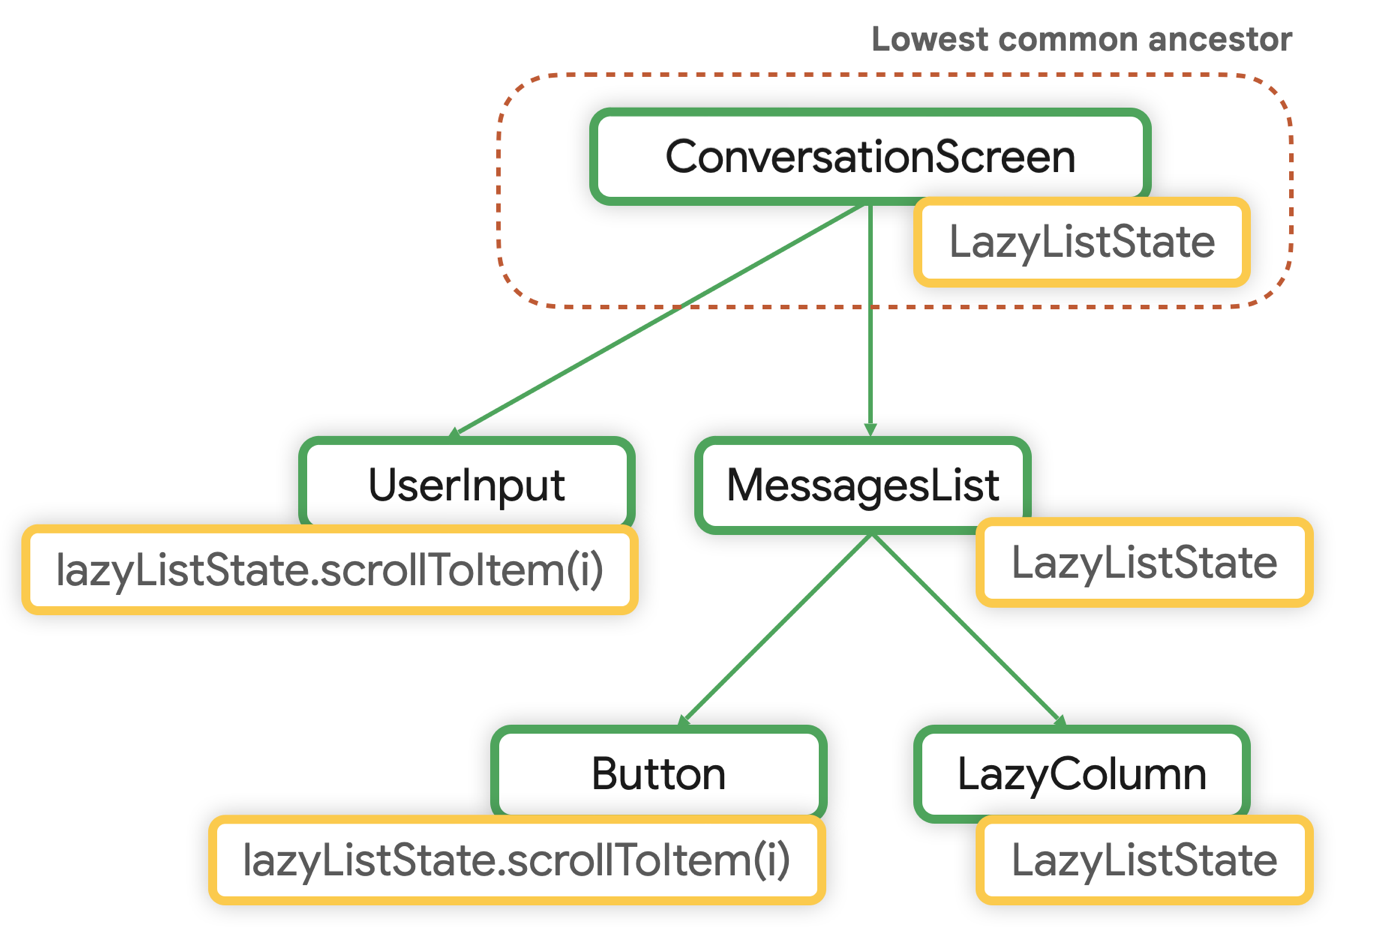 LazyListState-এর সর্বনিম্ন সাধারণ পূর্বপুরুষ হল ConversationScreen